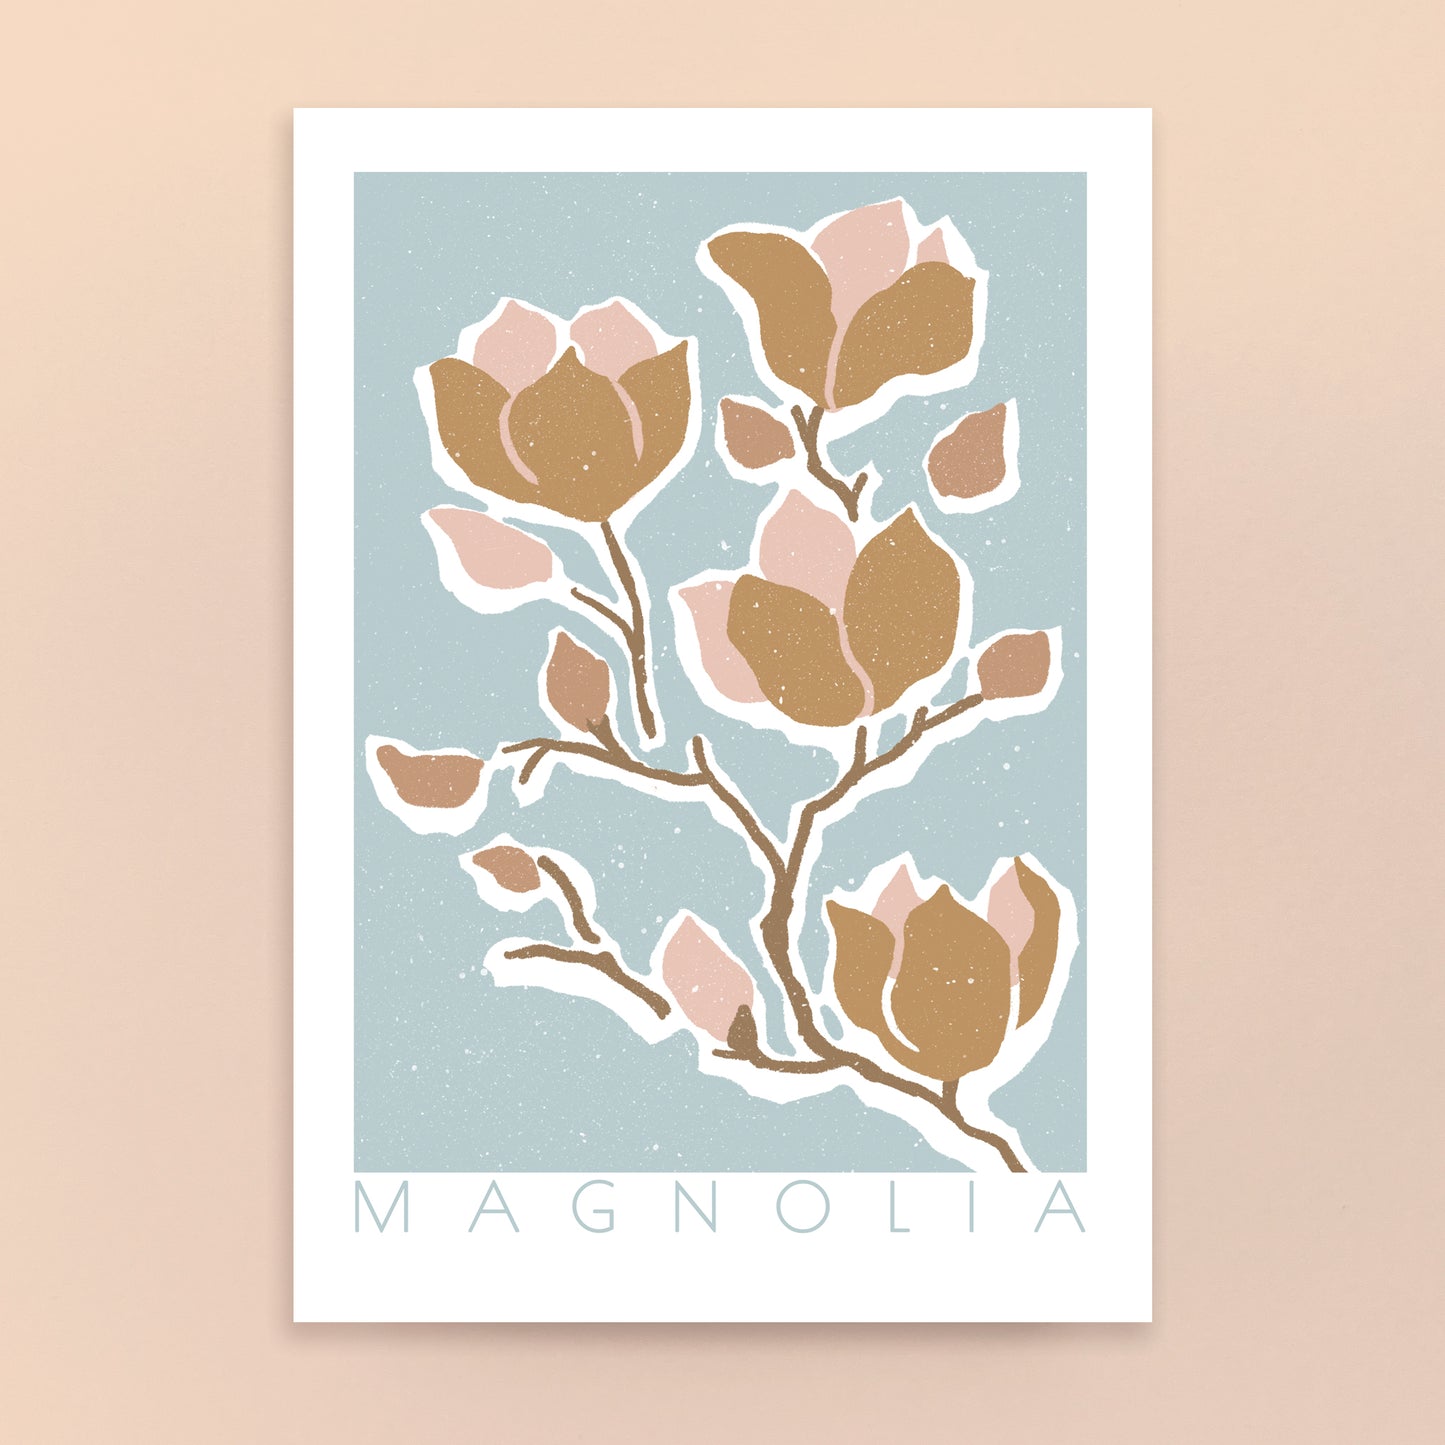 Magnolia A4 Art Print